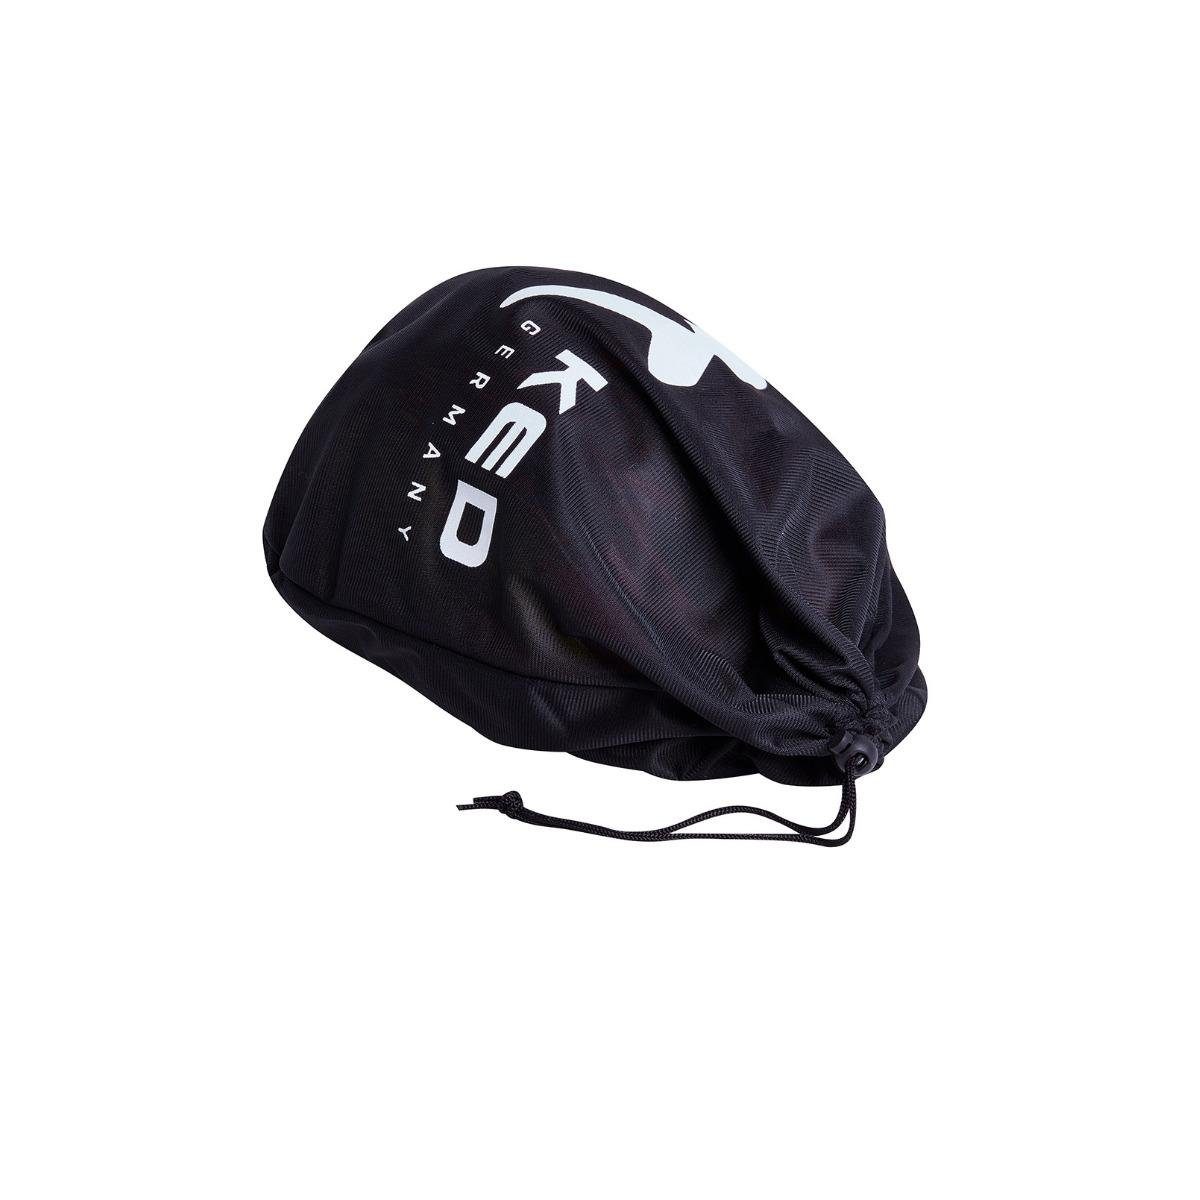 KED Helmsysteme Allroundhelm 44701090010 - Helmschutzsack für KED-Helme